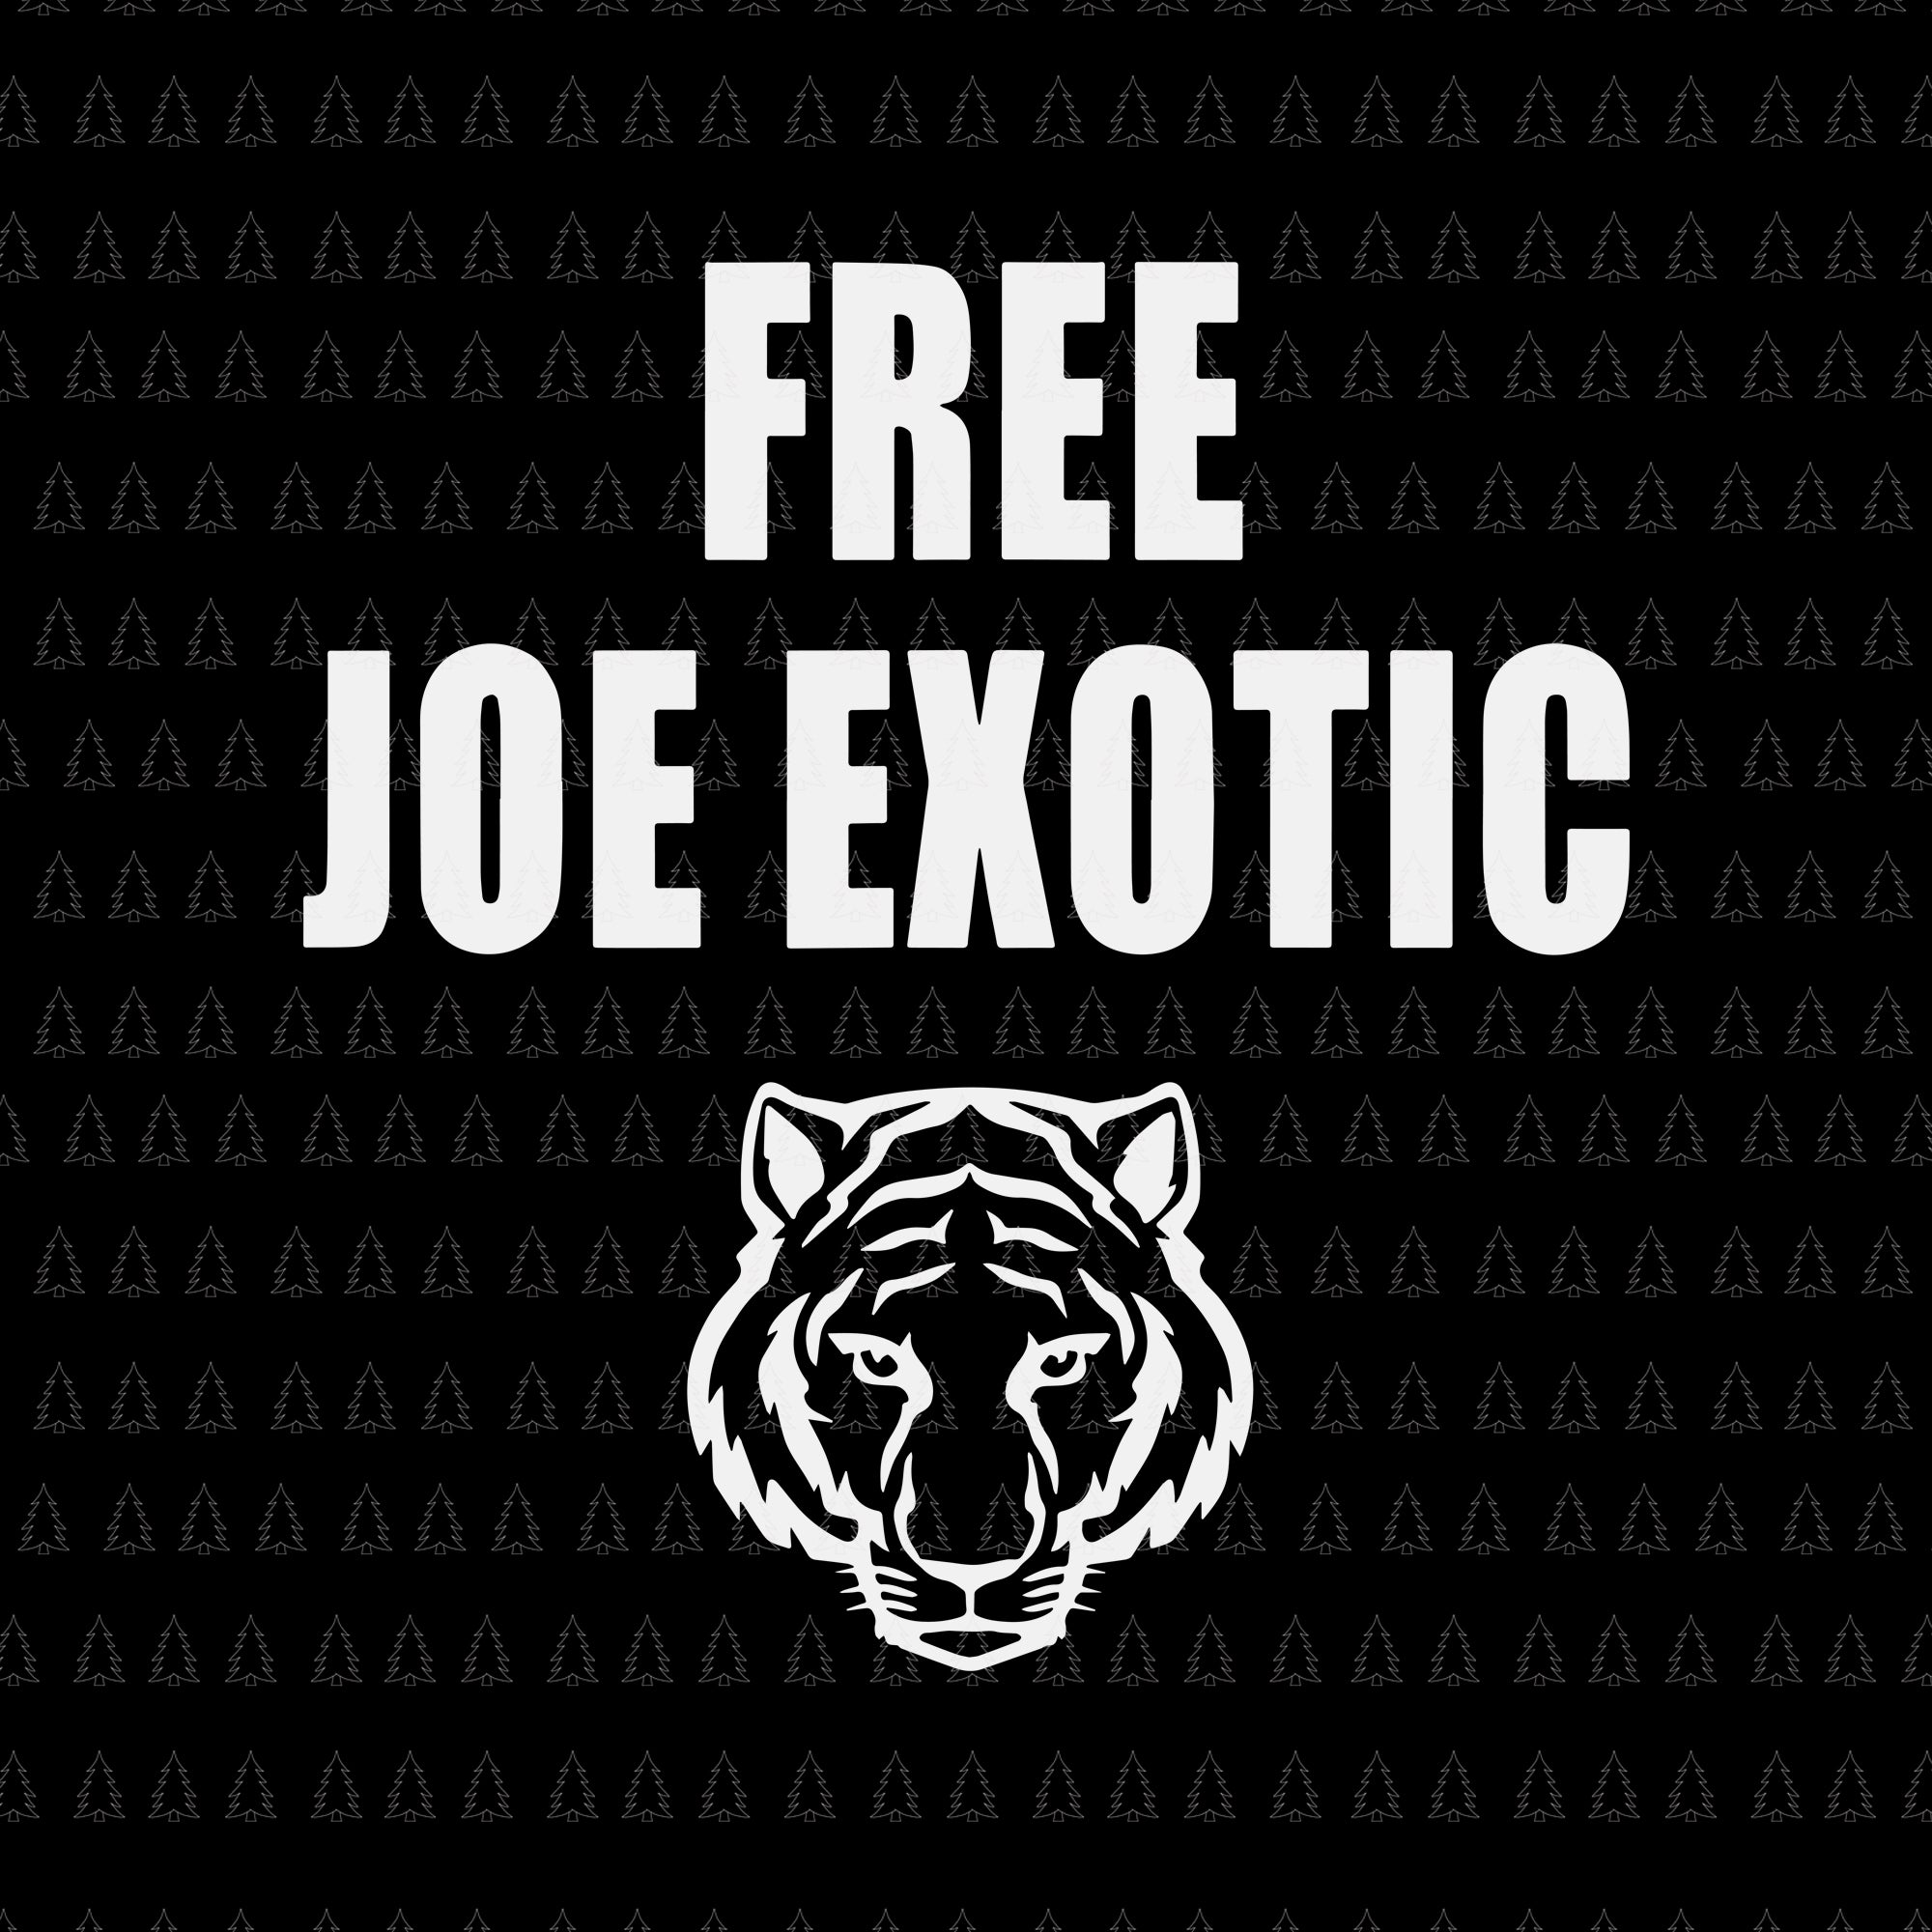 Free joe exotic svg, free joe exotic, free joe exotic png, free joe exotic vector, free joe exotic